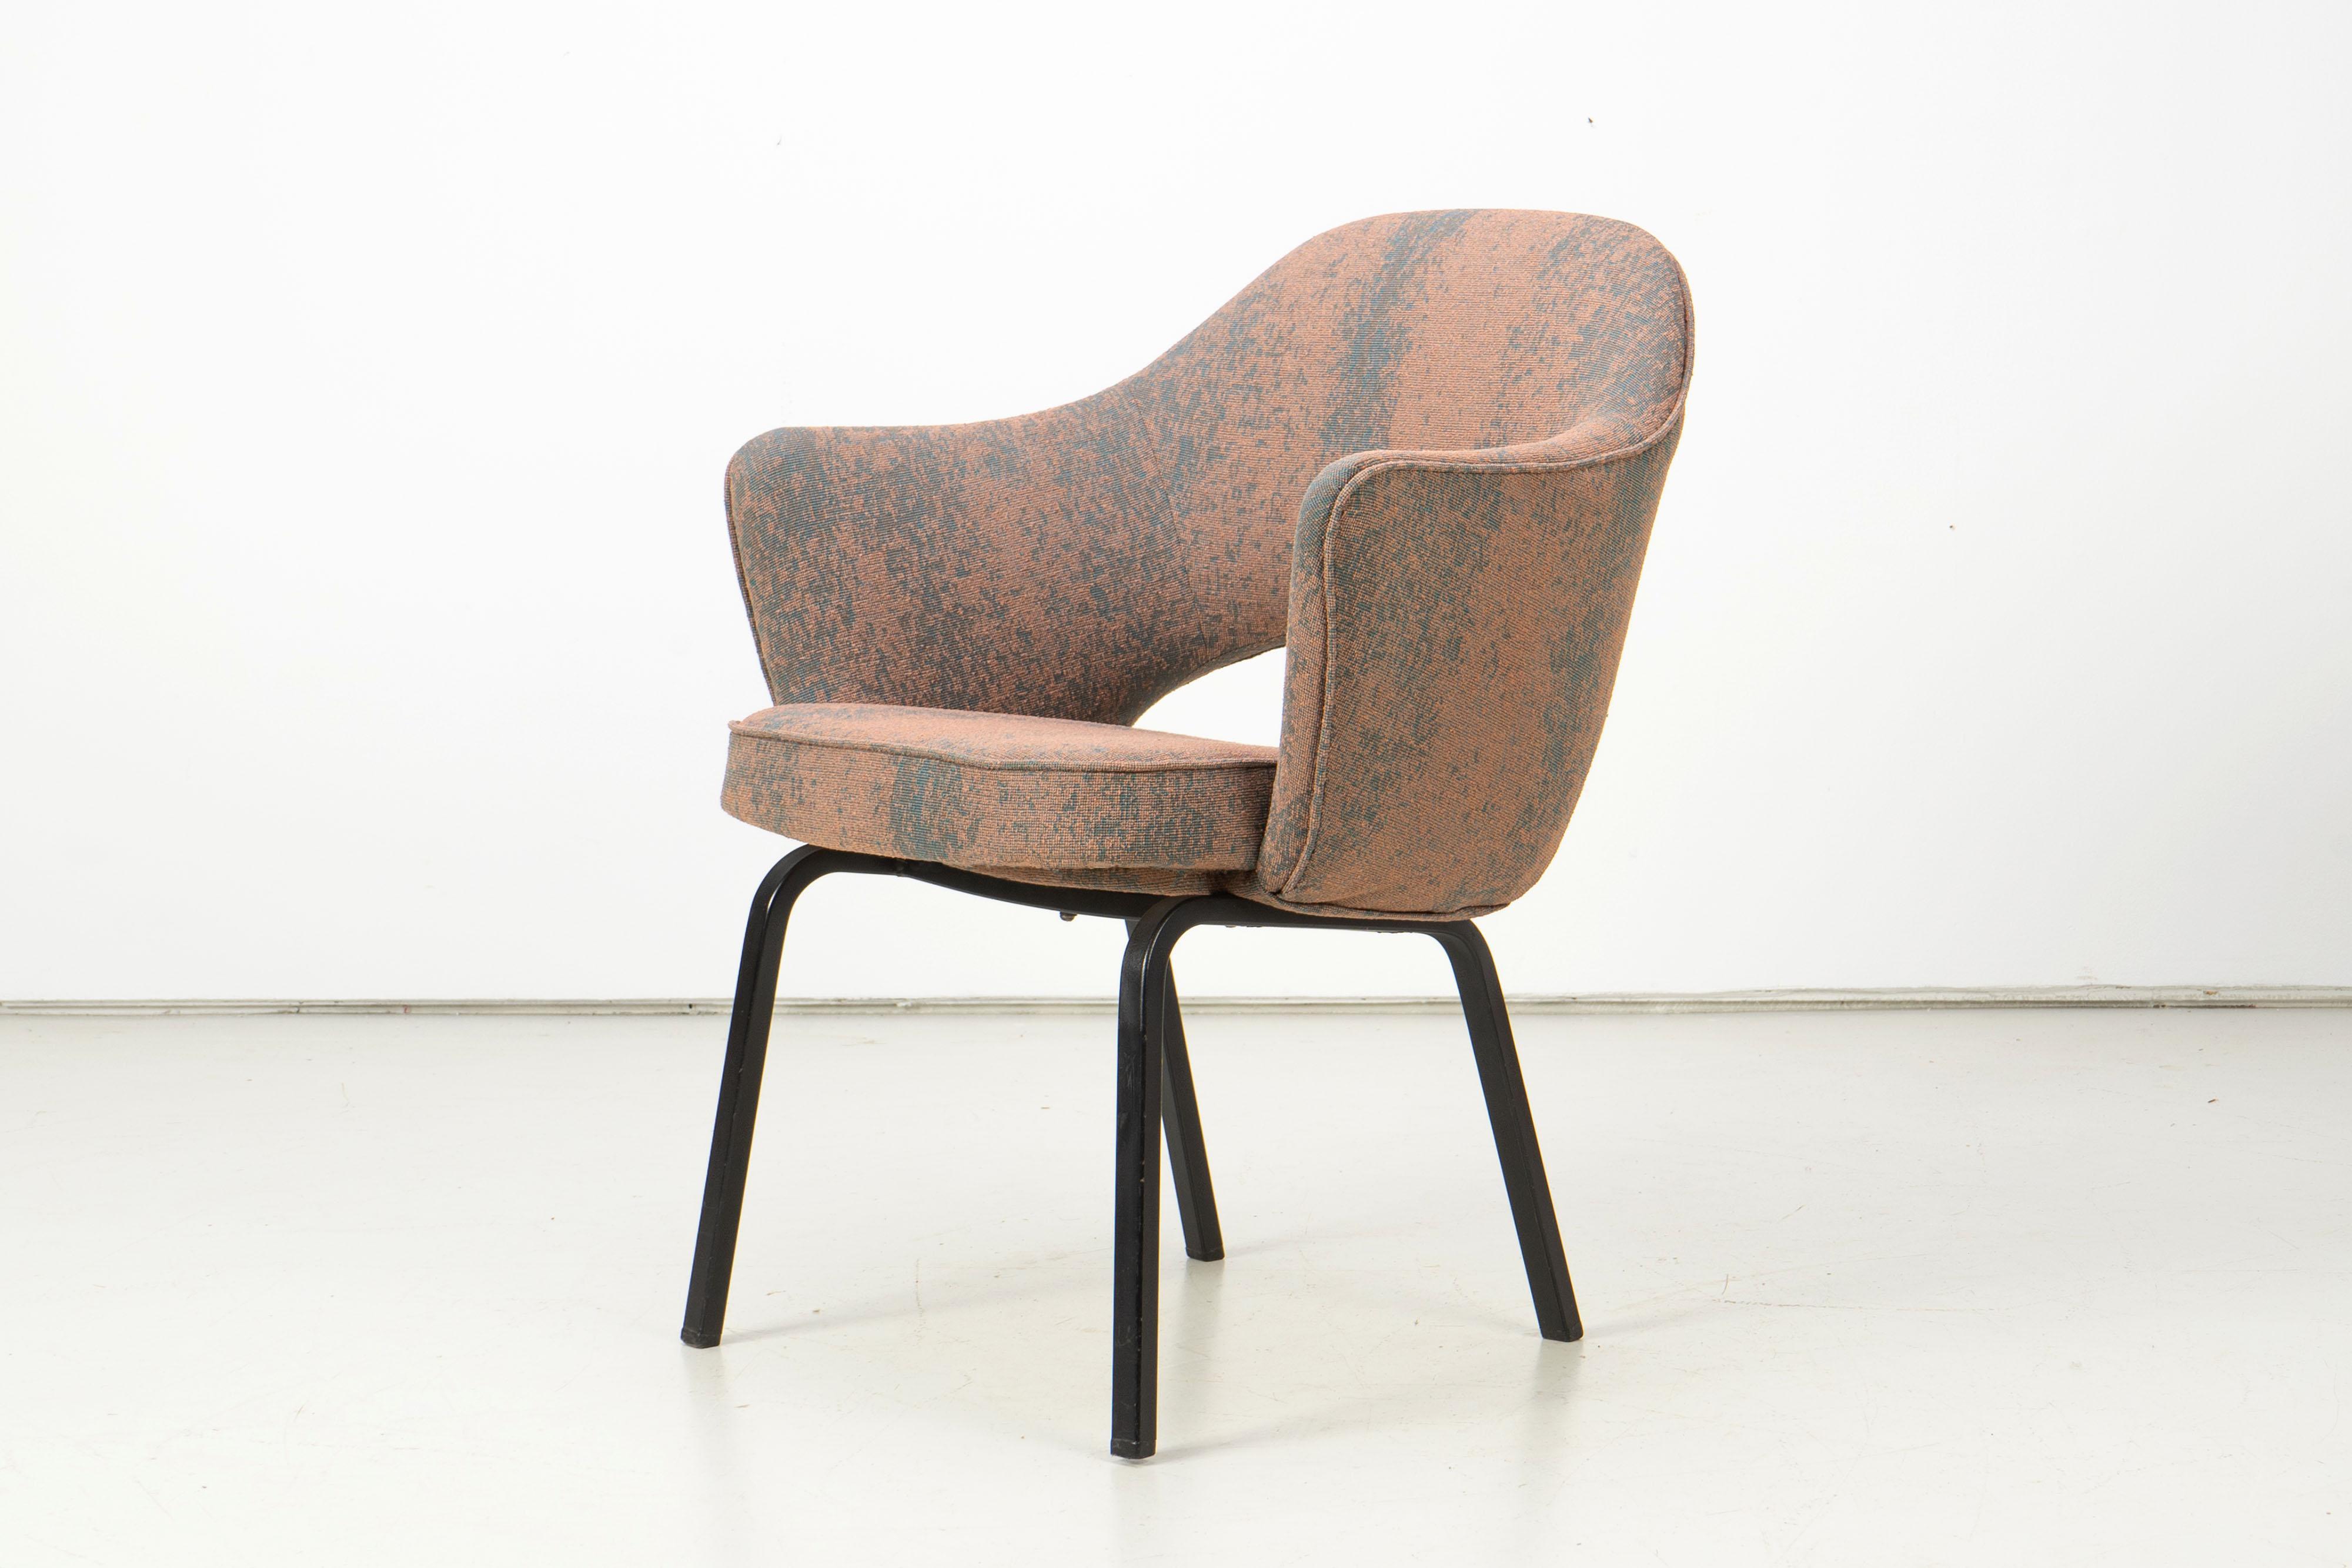 Sessel von Eero Saarinen, hergestellt von der schwedischen Nordiska Kompaniet unter Lizenz von Knoll Int. Die Polsterung wurde komplett erneuert und mit einem schönen Stoff von Kvadrat bezogen.